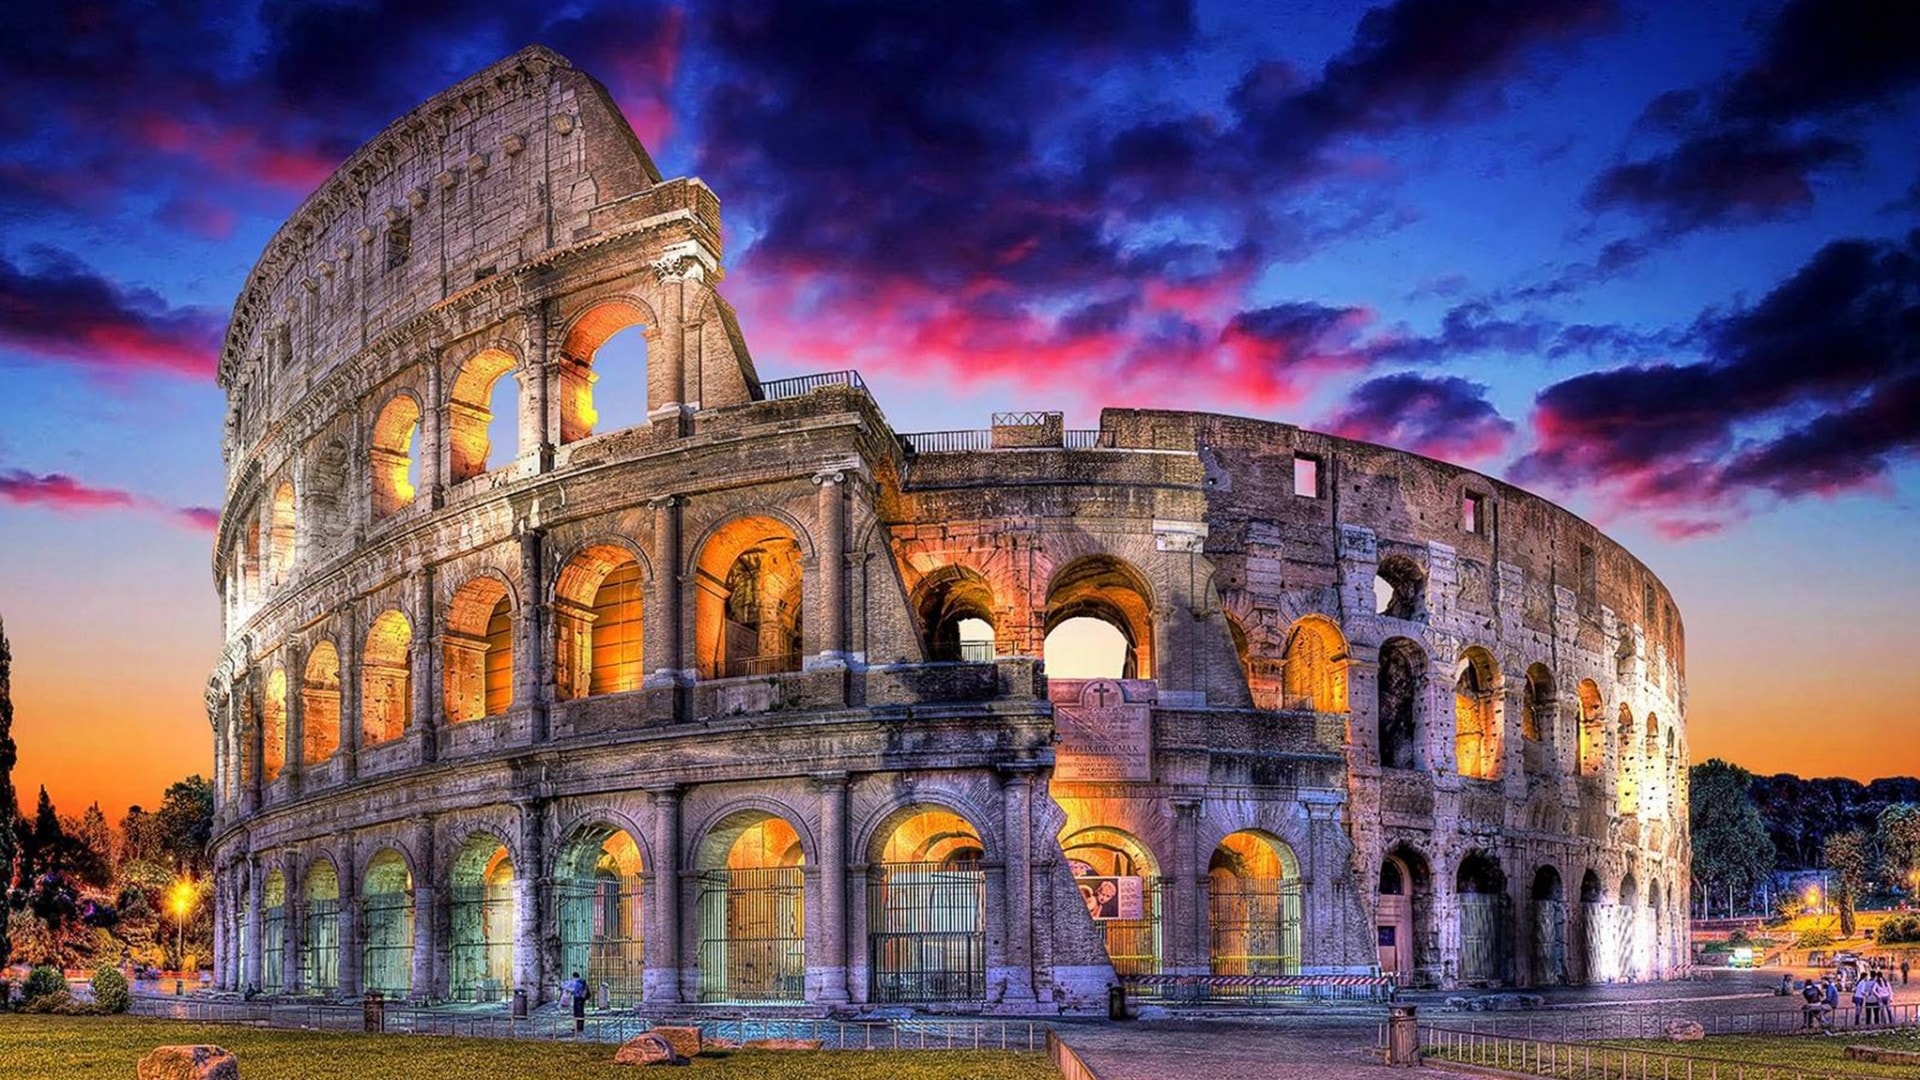 تور لیدر رم |رزرو آنلاین تور لیدر مسلط و حرفه ای رم با قیمت استثنائی